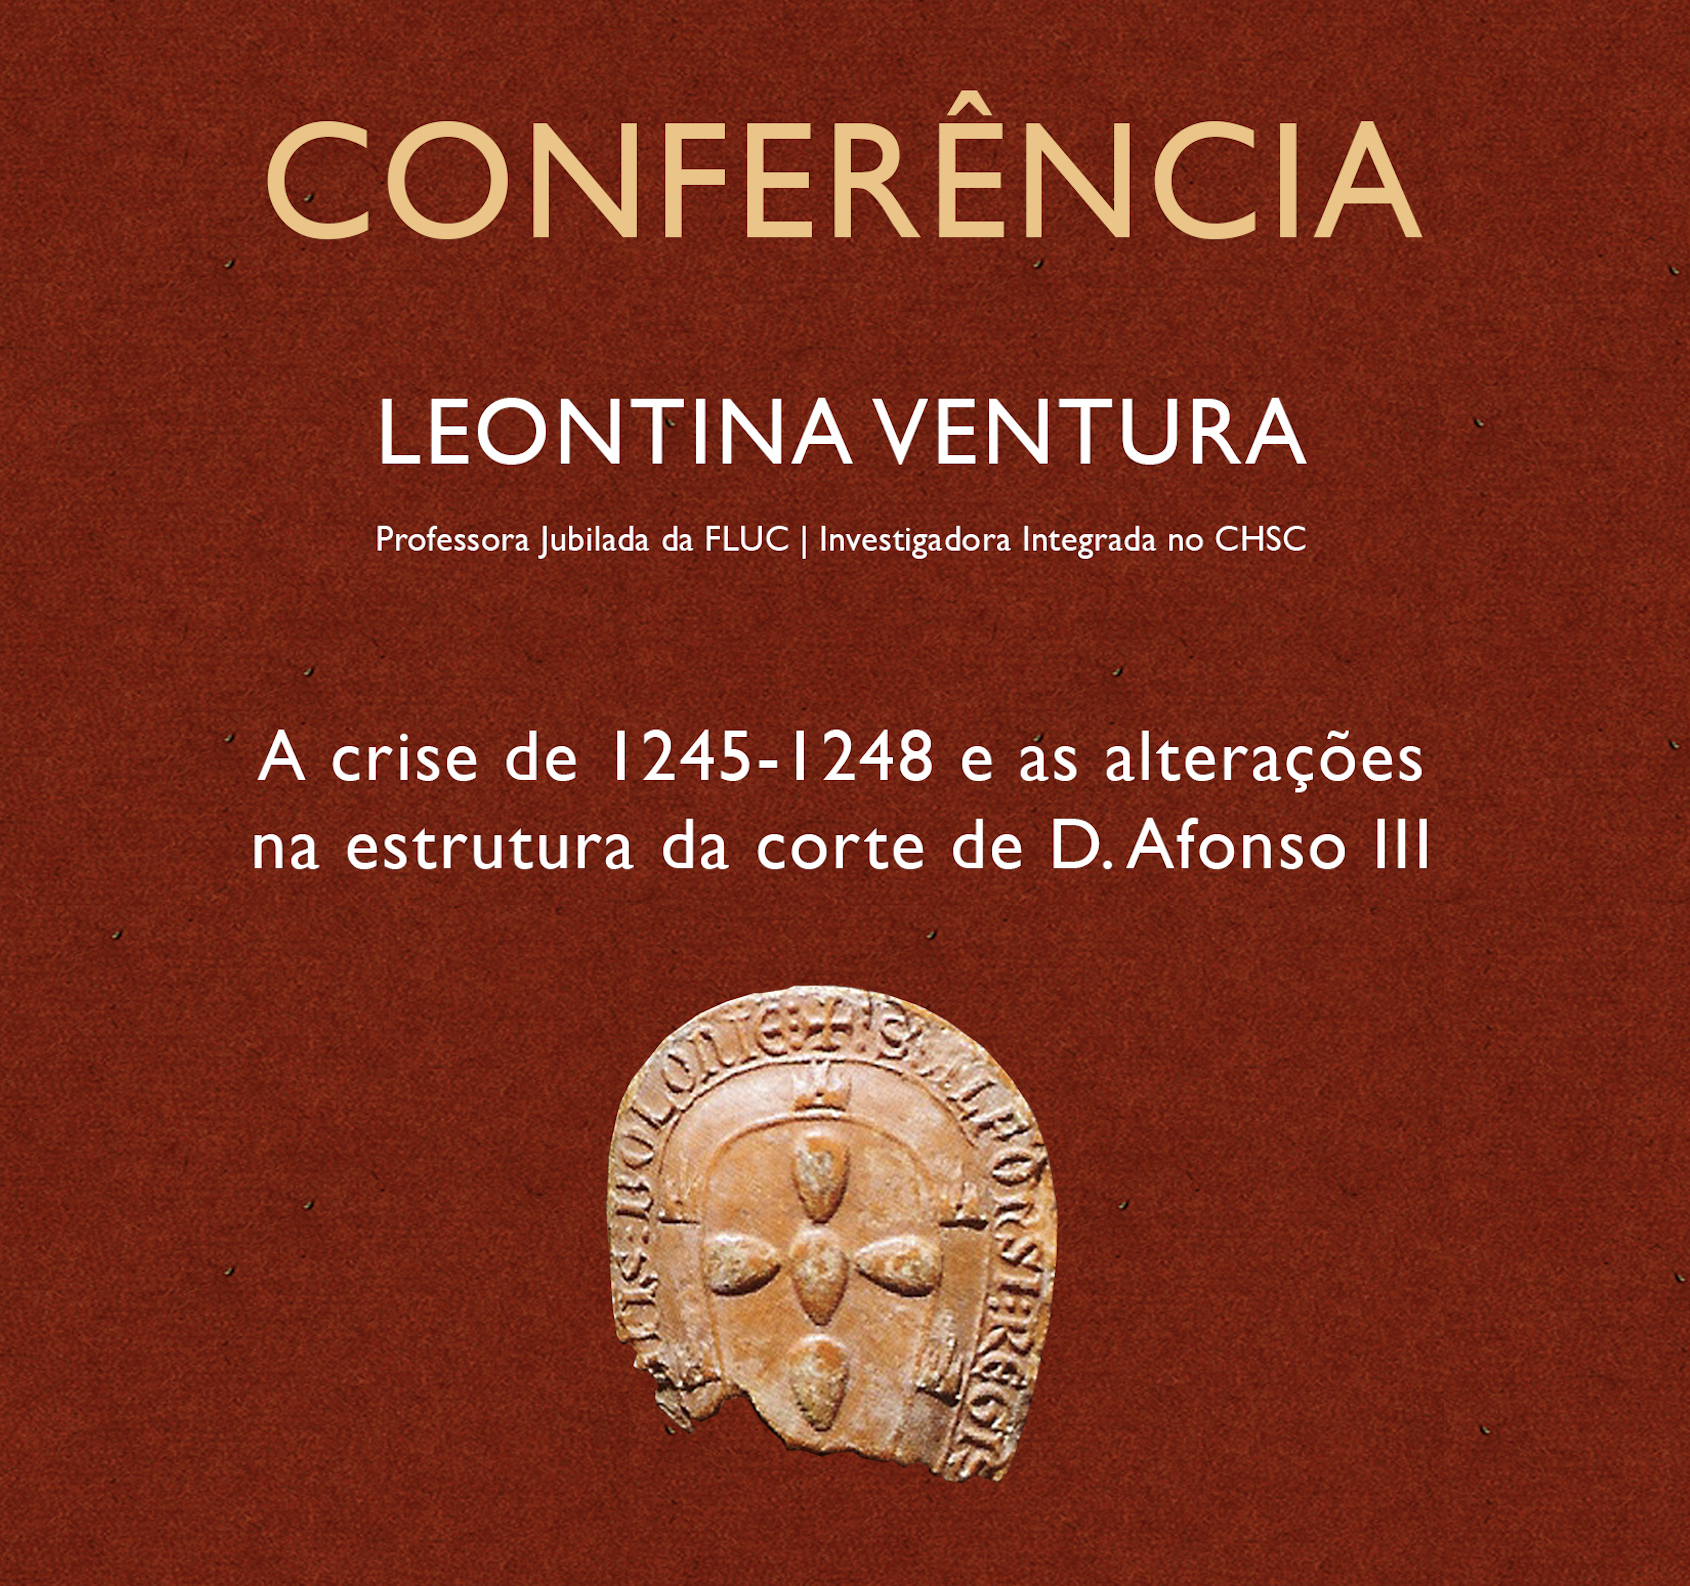 Conferência por Leontina Ventura: A crise de 1245-1248 e as alterações na estrutura da corte de D. Afonso III